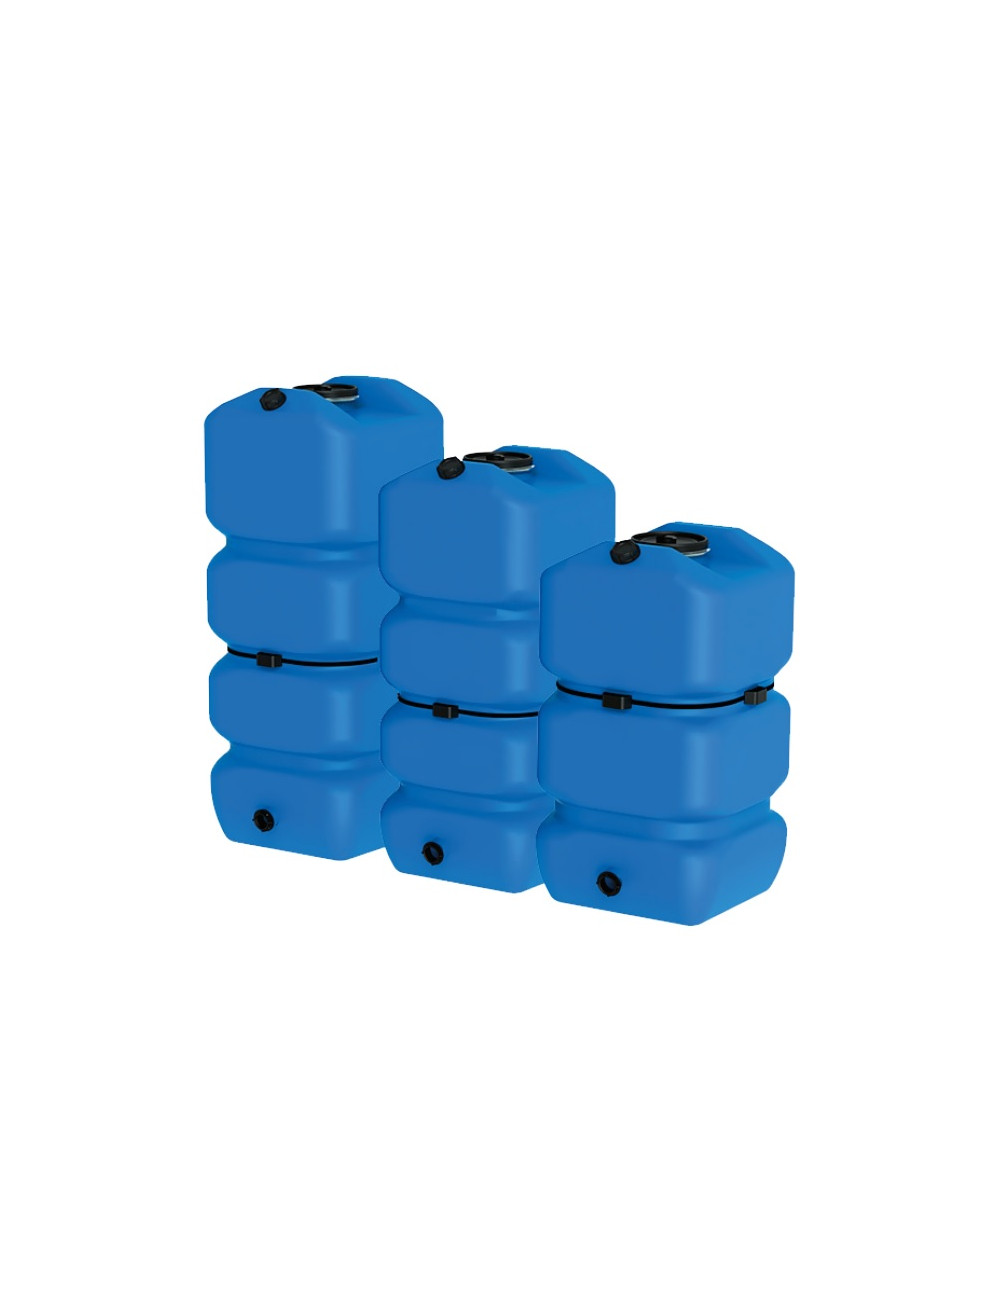 Depósito modulares para AdBlue Agua de 750 y 1000 Litros GESPASA AM  Material del deposito Polietileno Tipo de deposito Estático Volumen 750 L